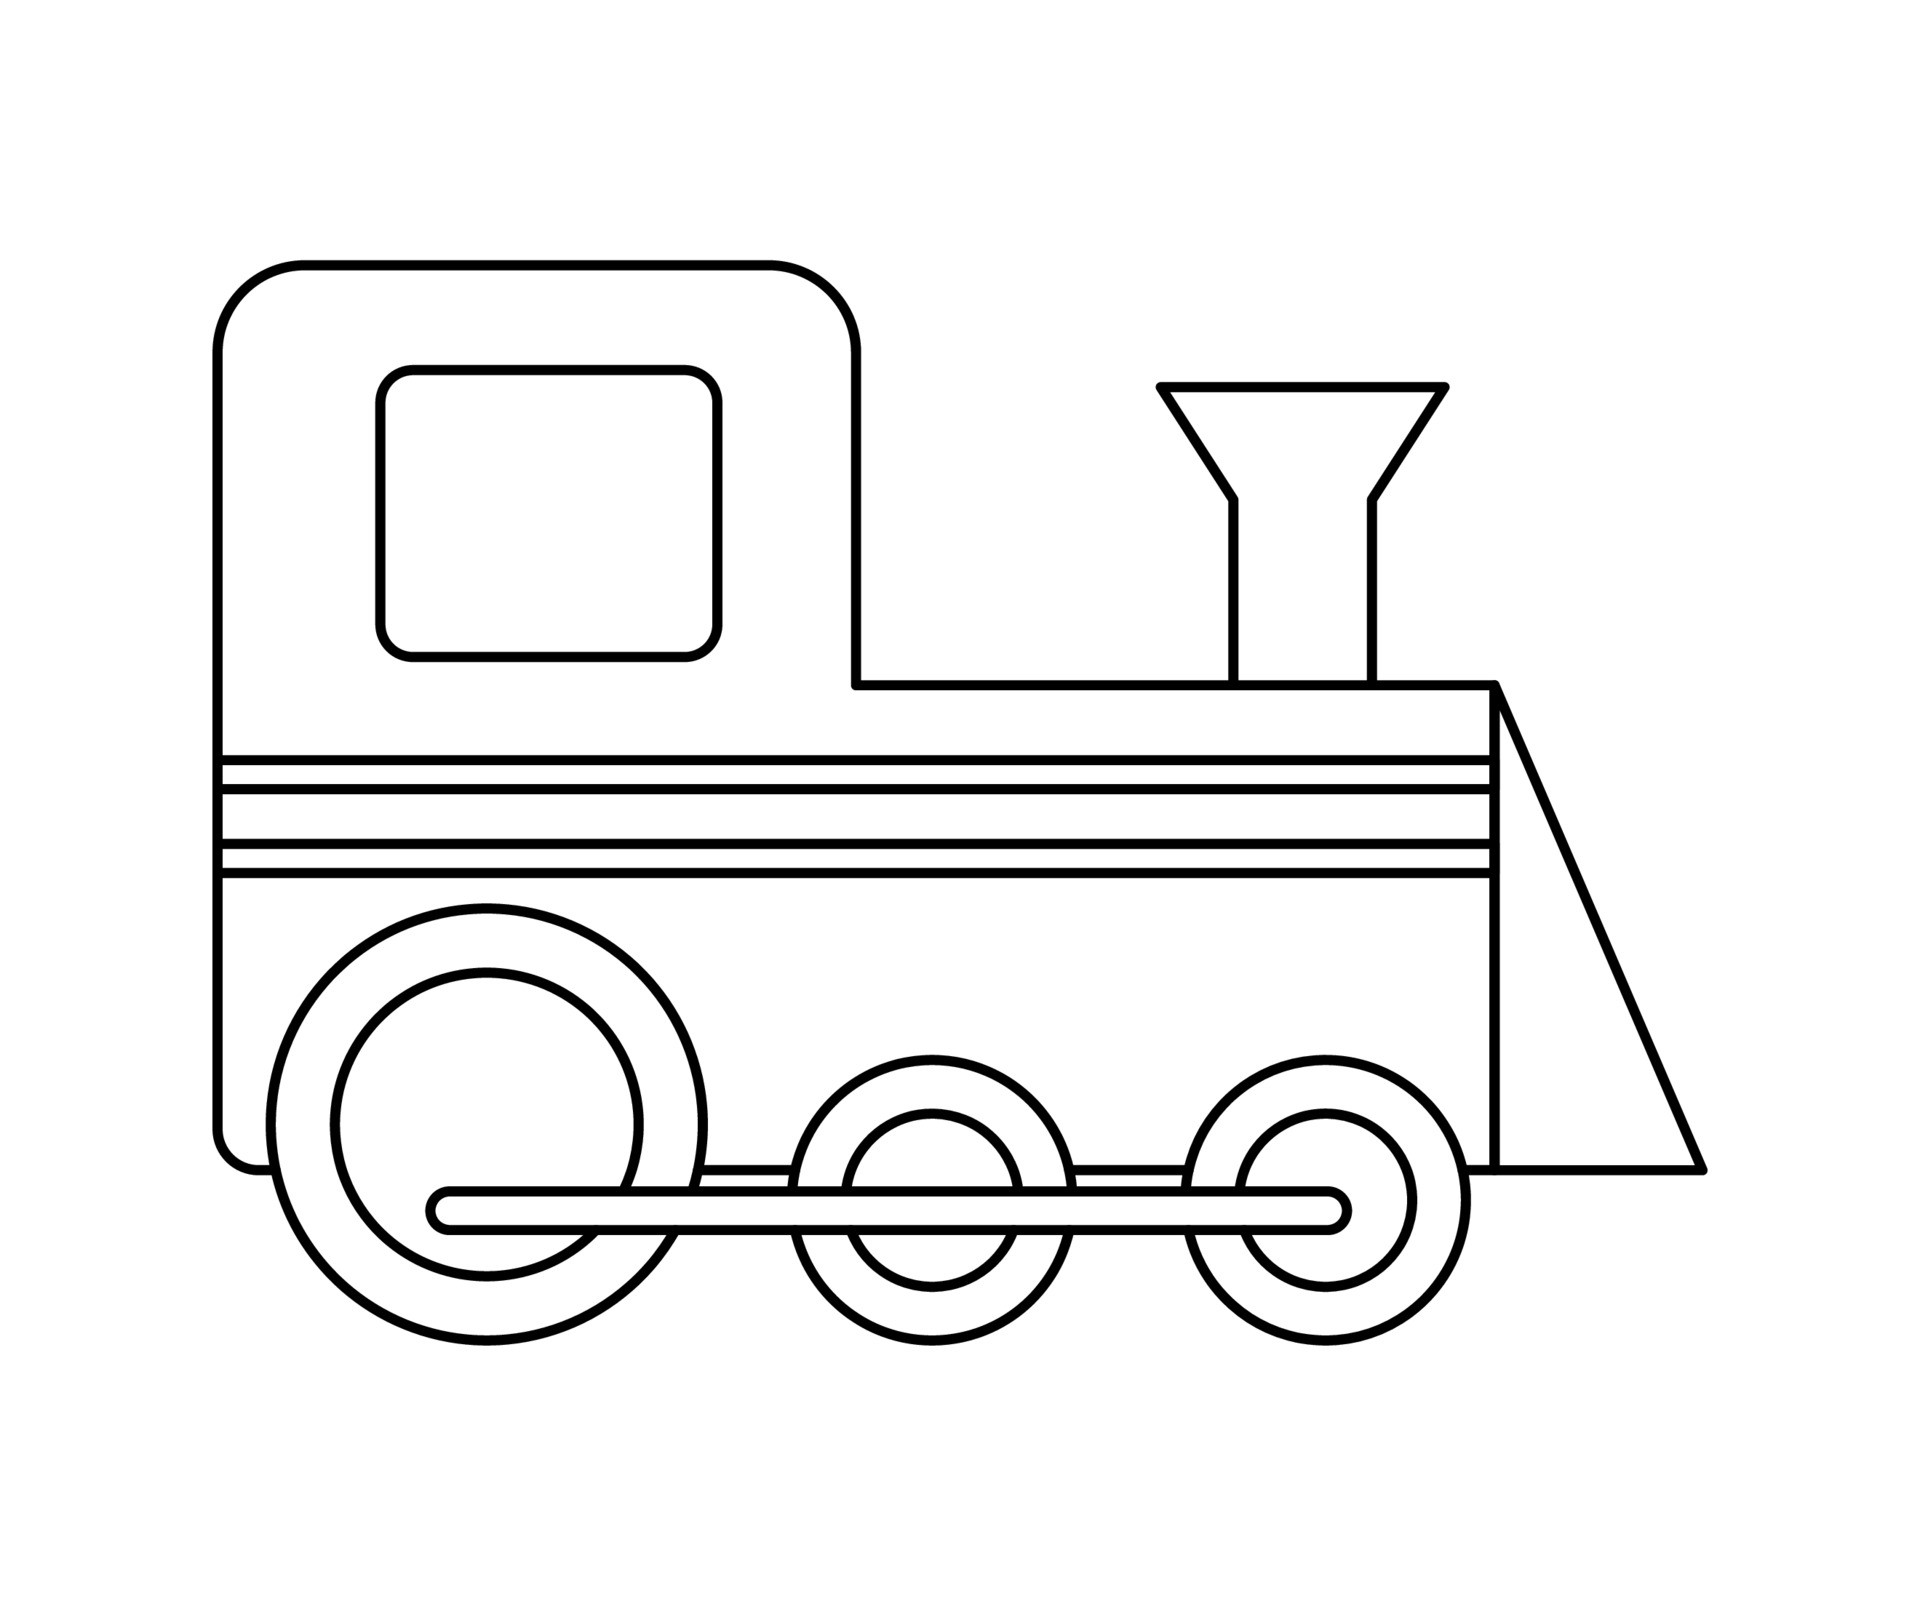 Train sketch icon Royalty Free Vector Image - VectorStock